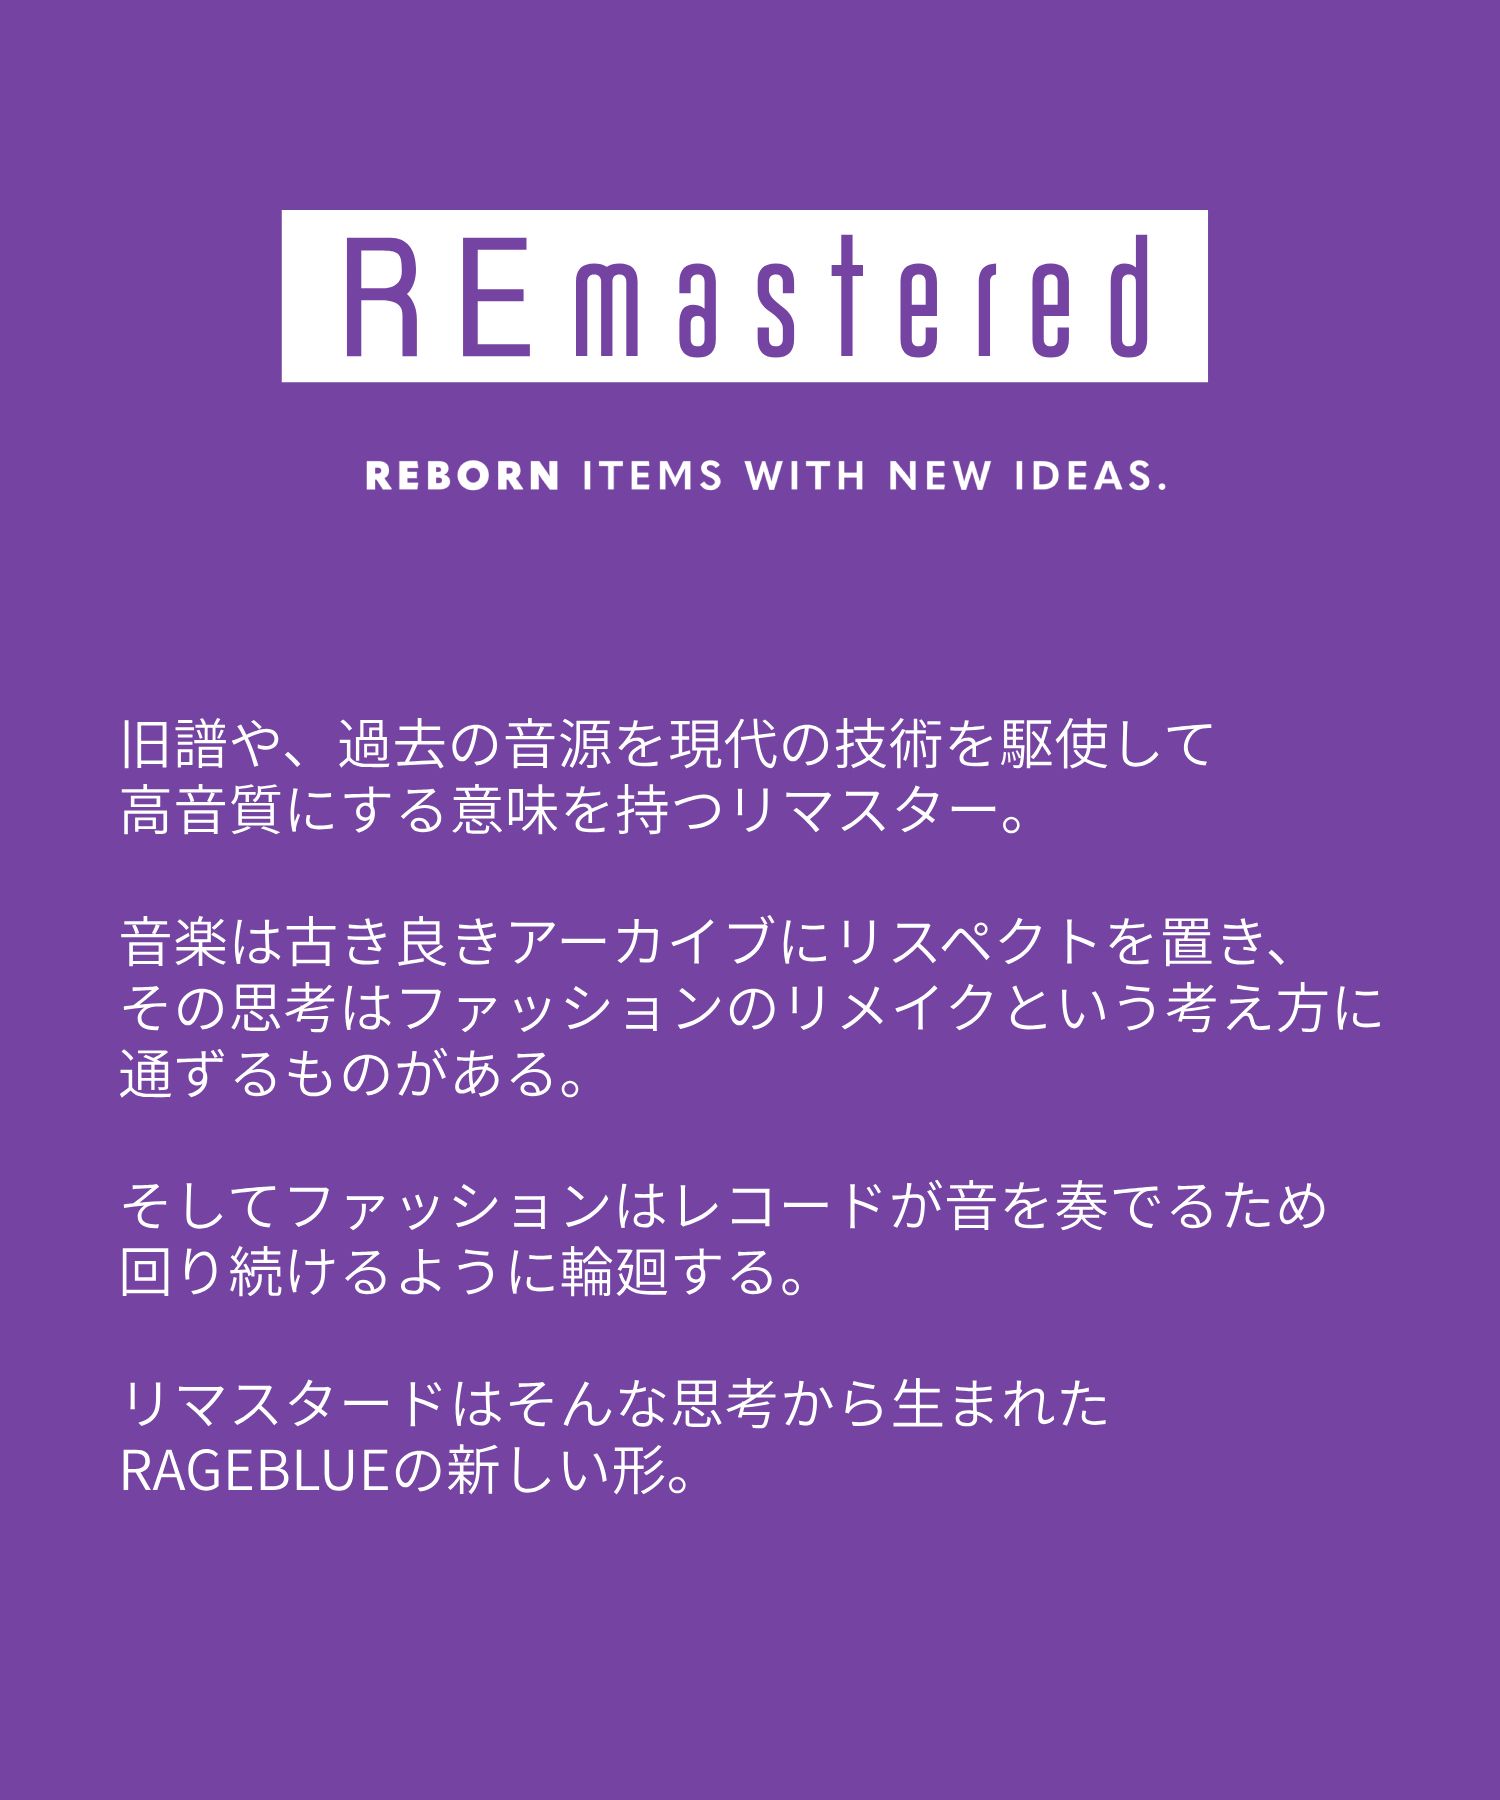 【REmastered】エアサーマル/BIG MA-1ブルゾン | [公式]レイジ